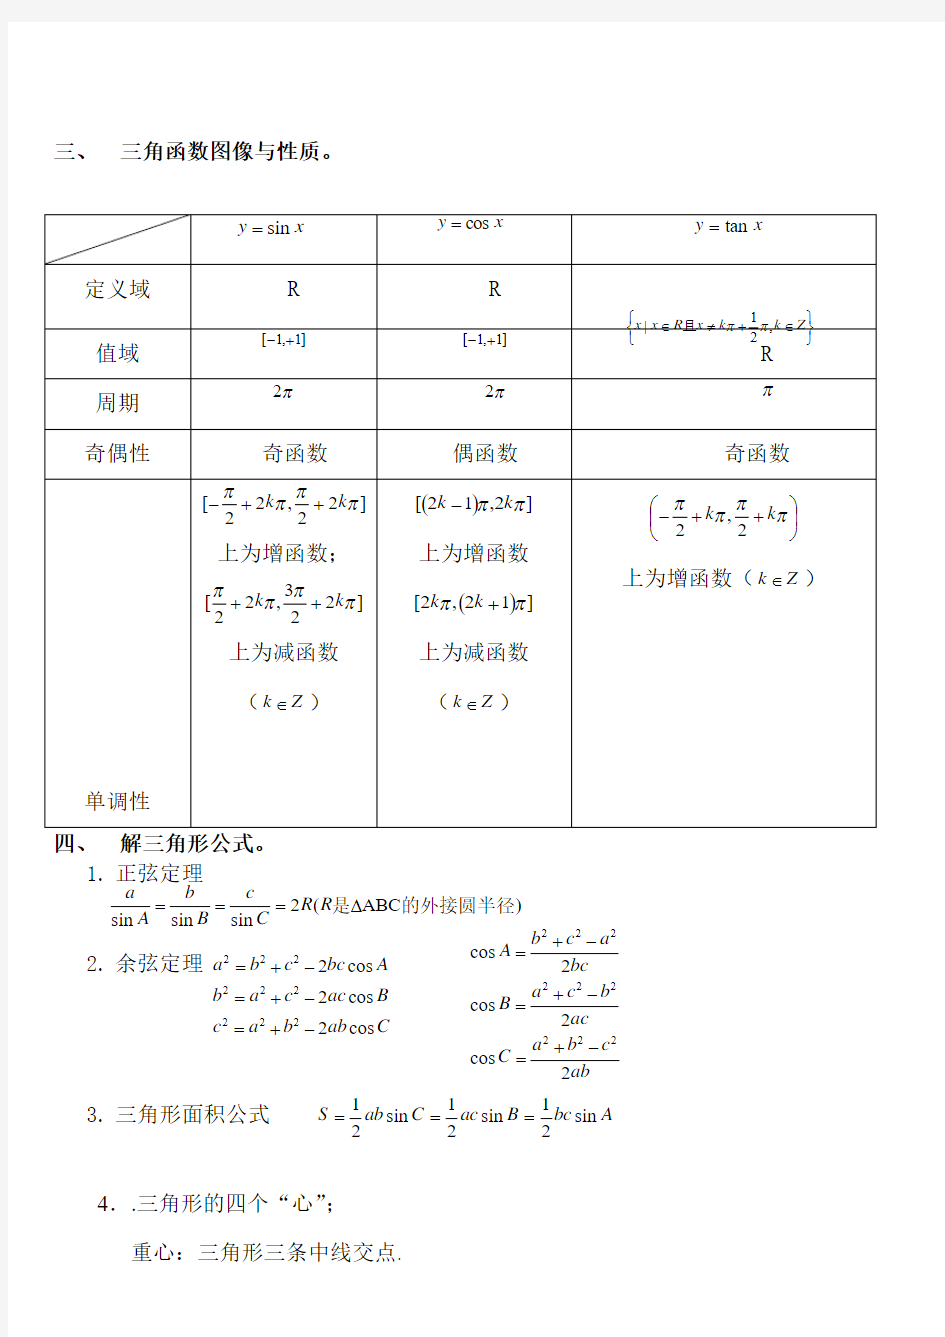 2019年高考数学必考必背公式汇总清单(打印版)